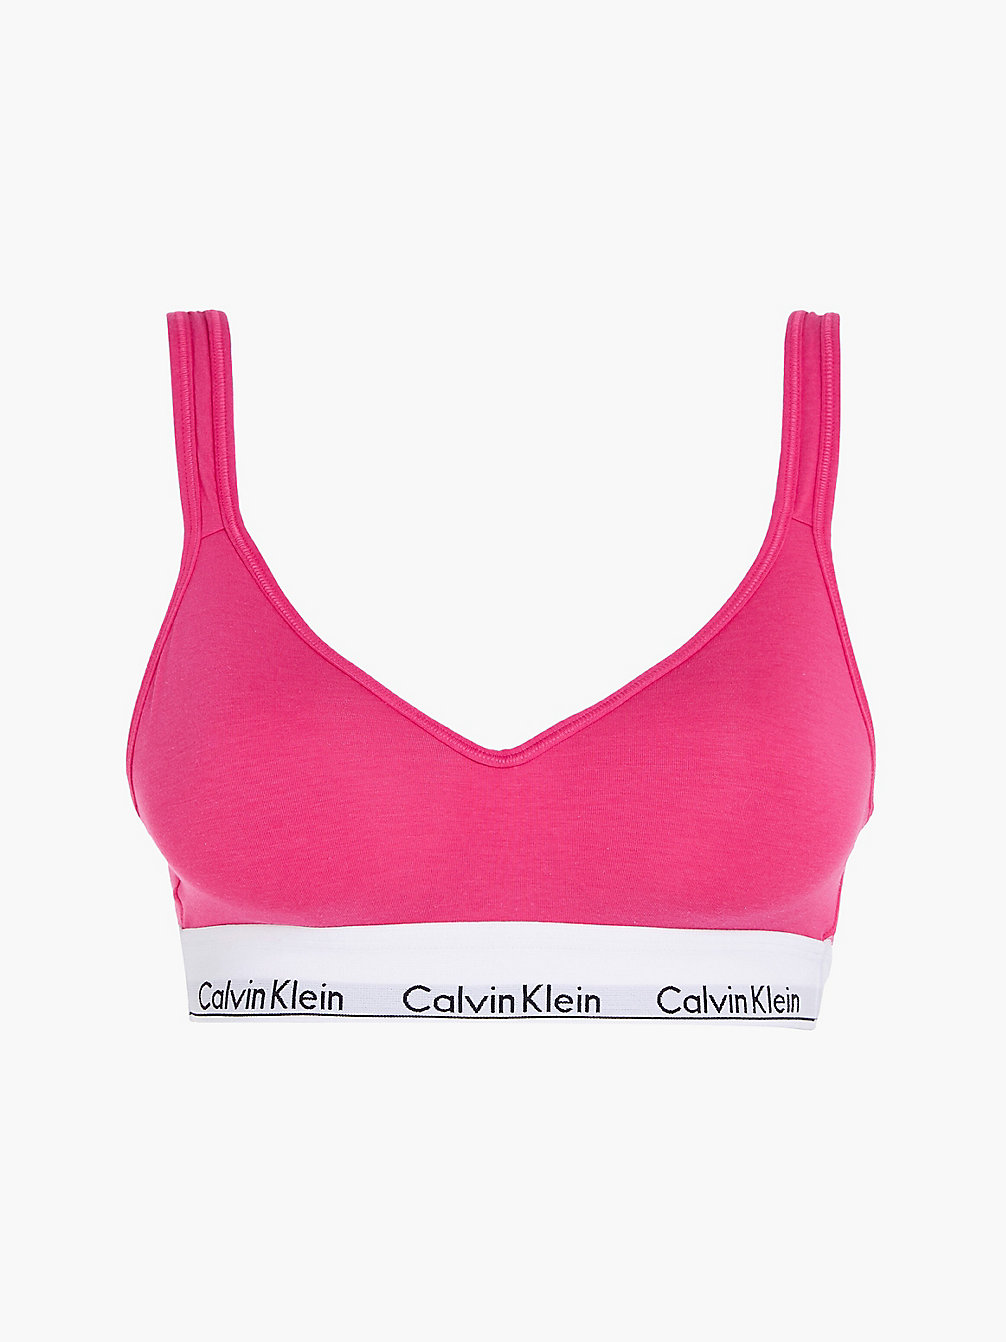 RASPBERRY SORBET Lift Bralette – Modern Cotton undefined Damen Calvin Klein